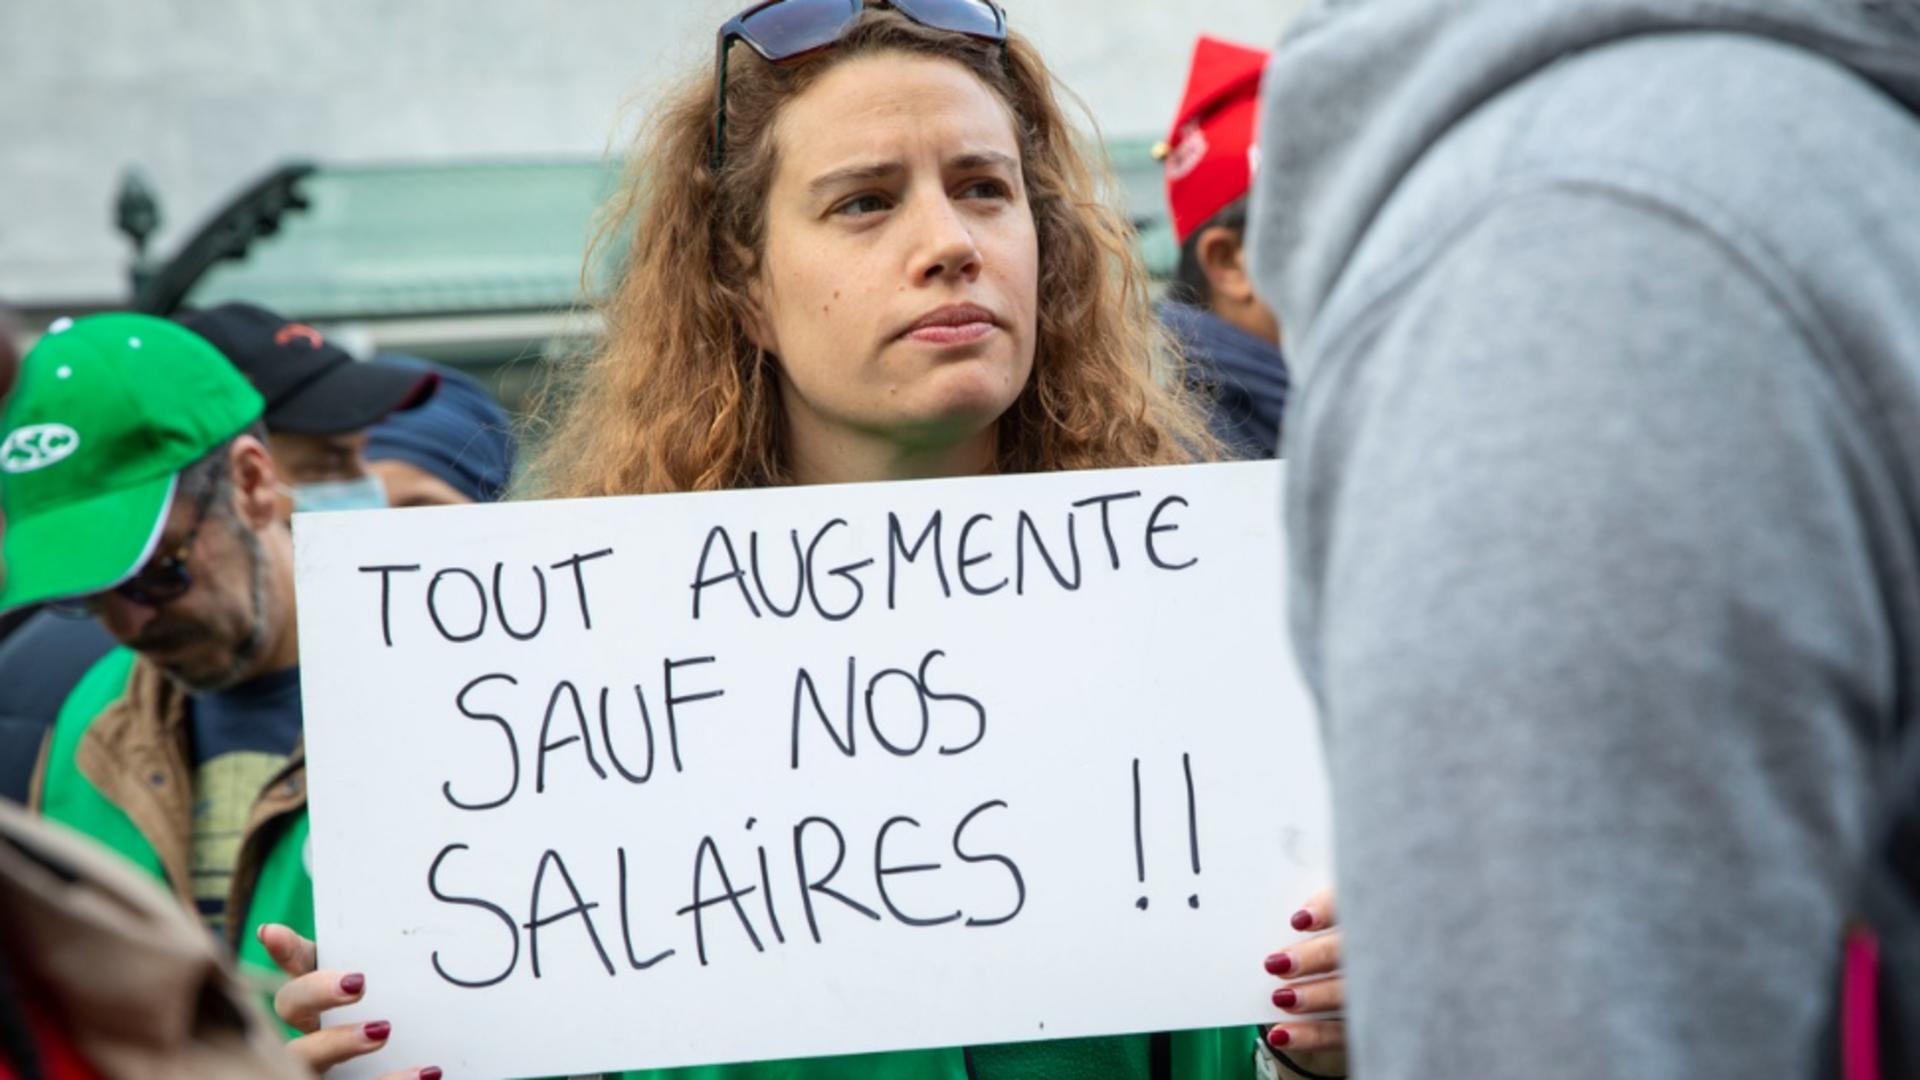 Viața este prea scumpă, acuză sindicaliștii. Foto/Profimedia